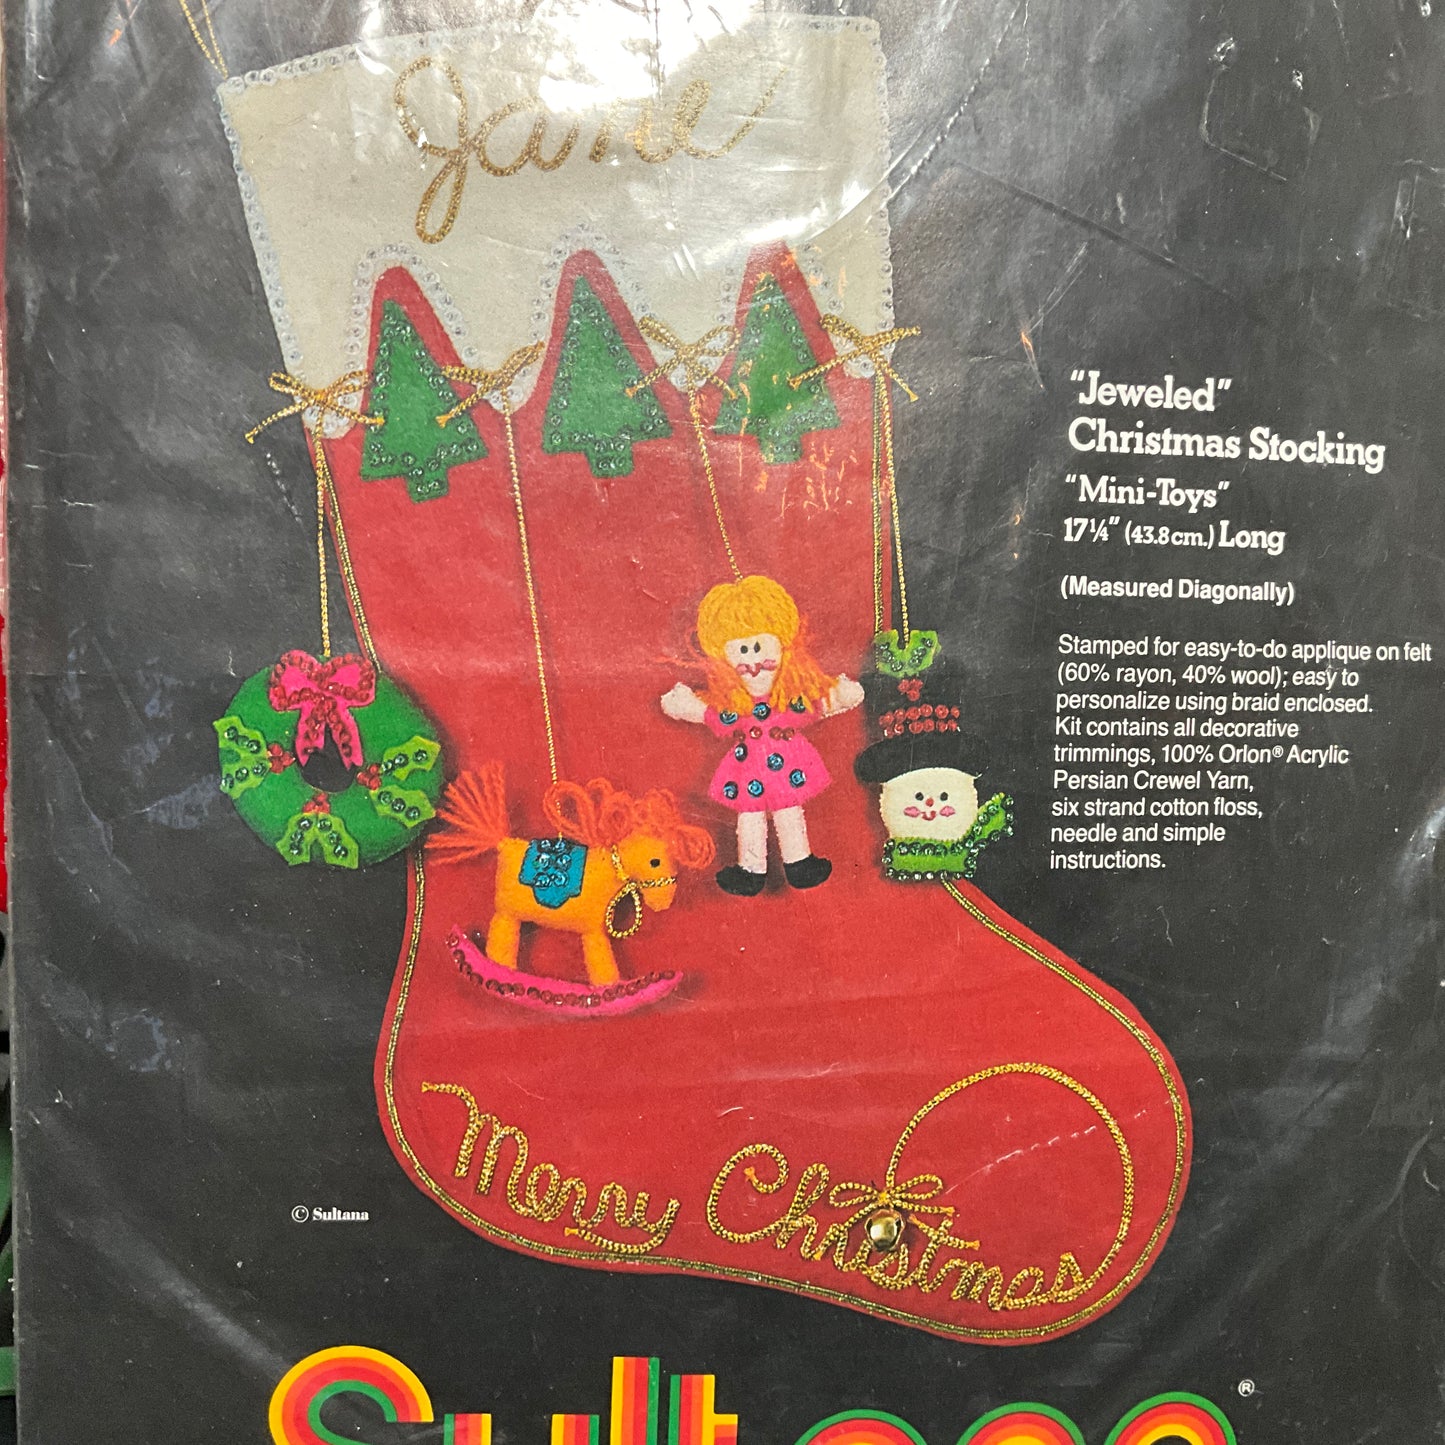 Sultana Jeweled Christmas Stocking Mini-Toys 32110 vintage felt kit